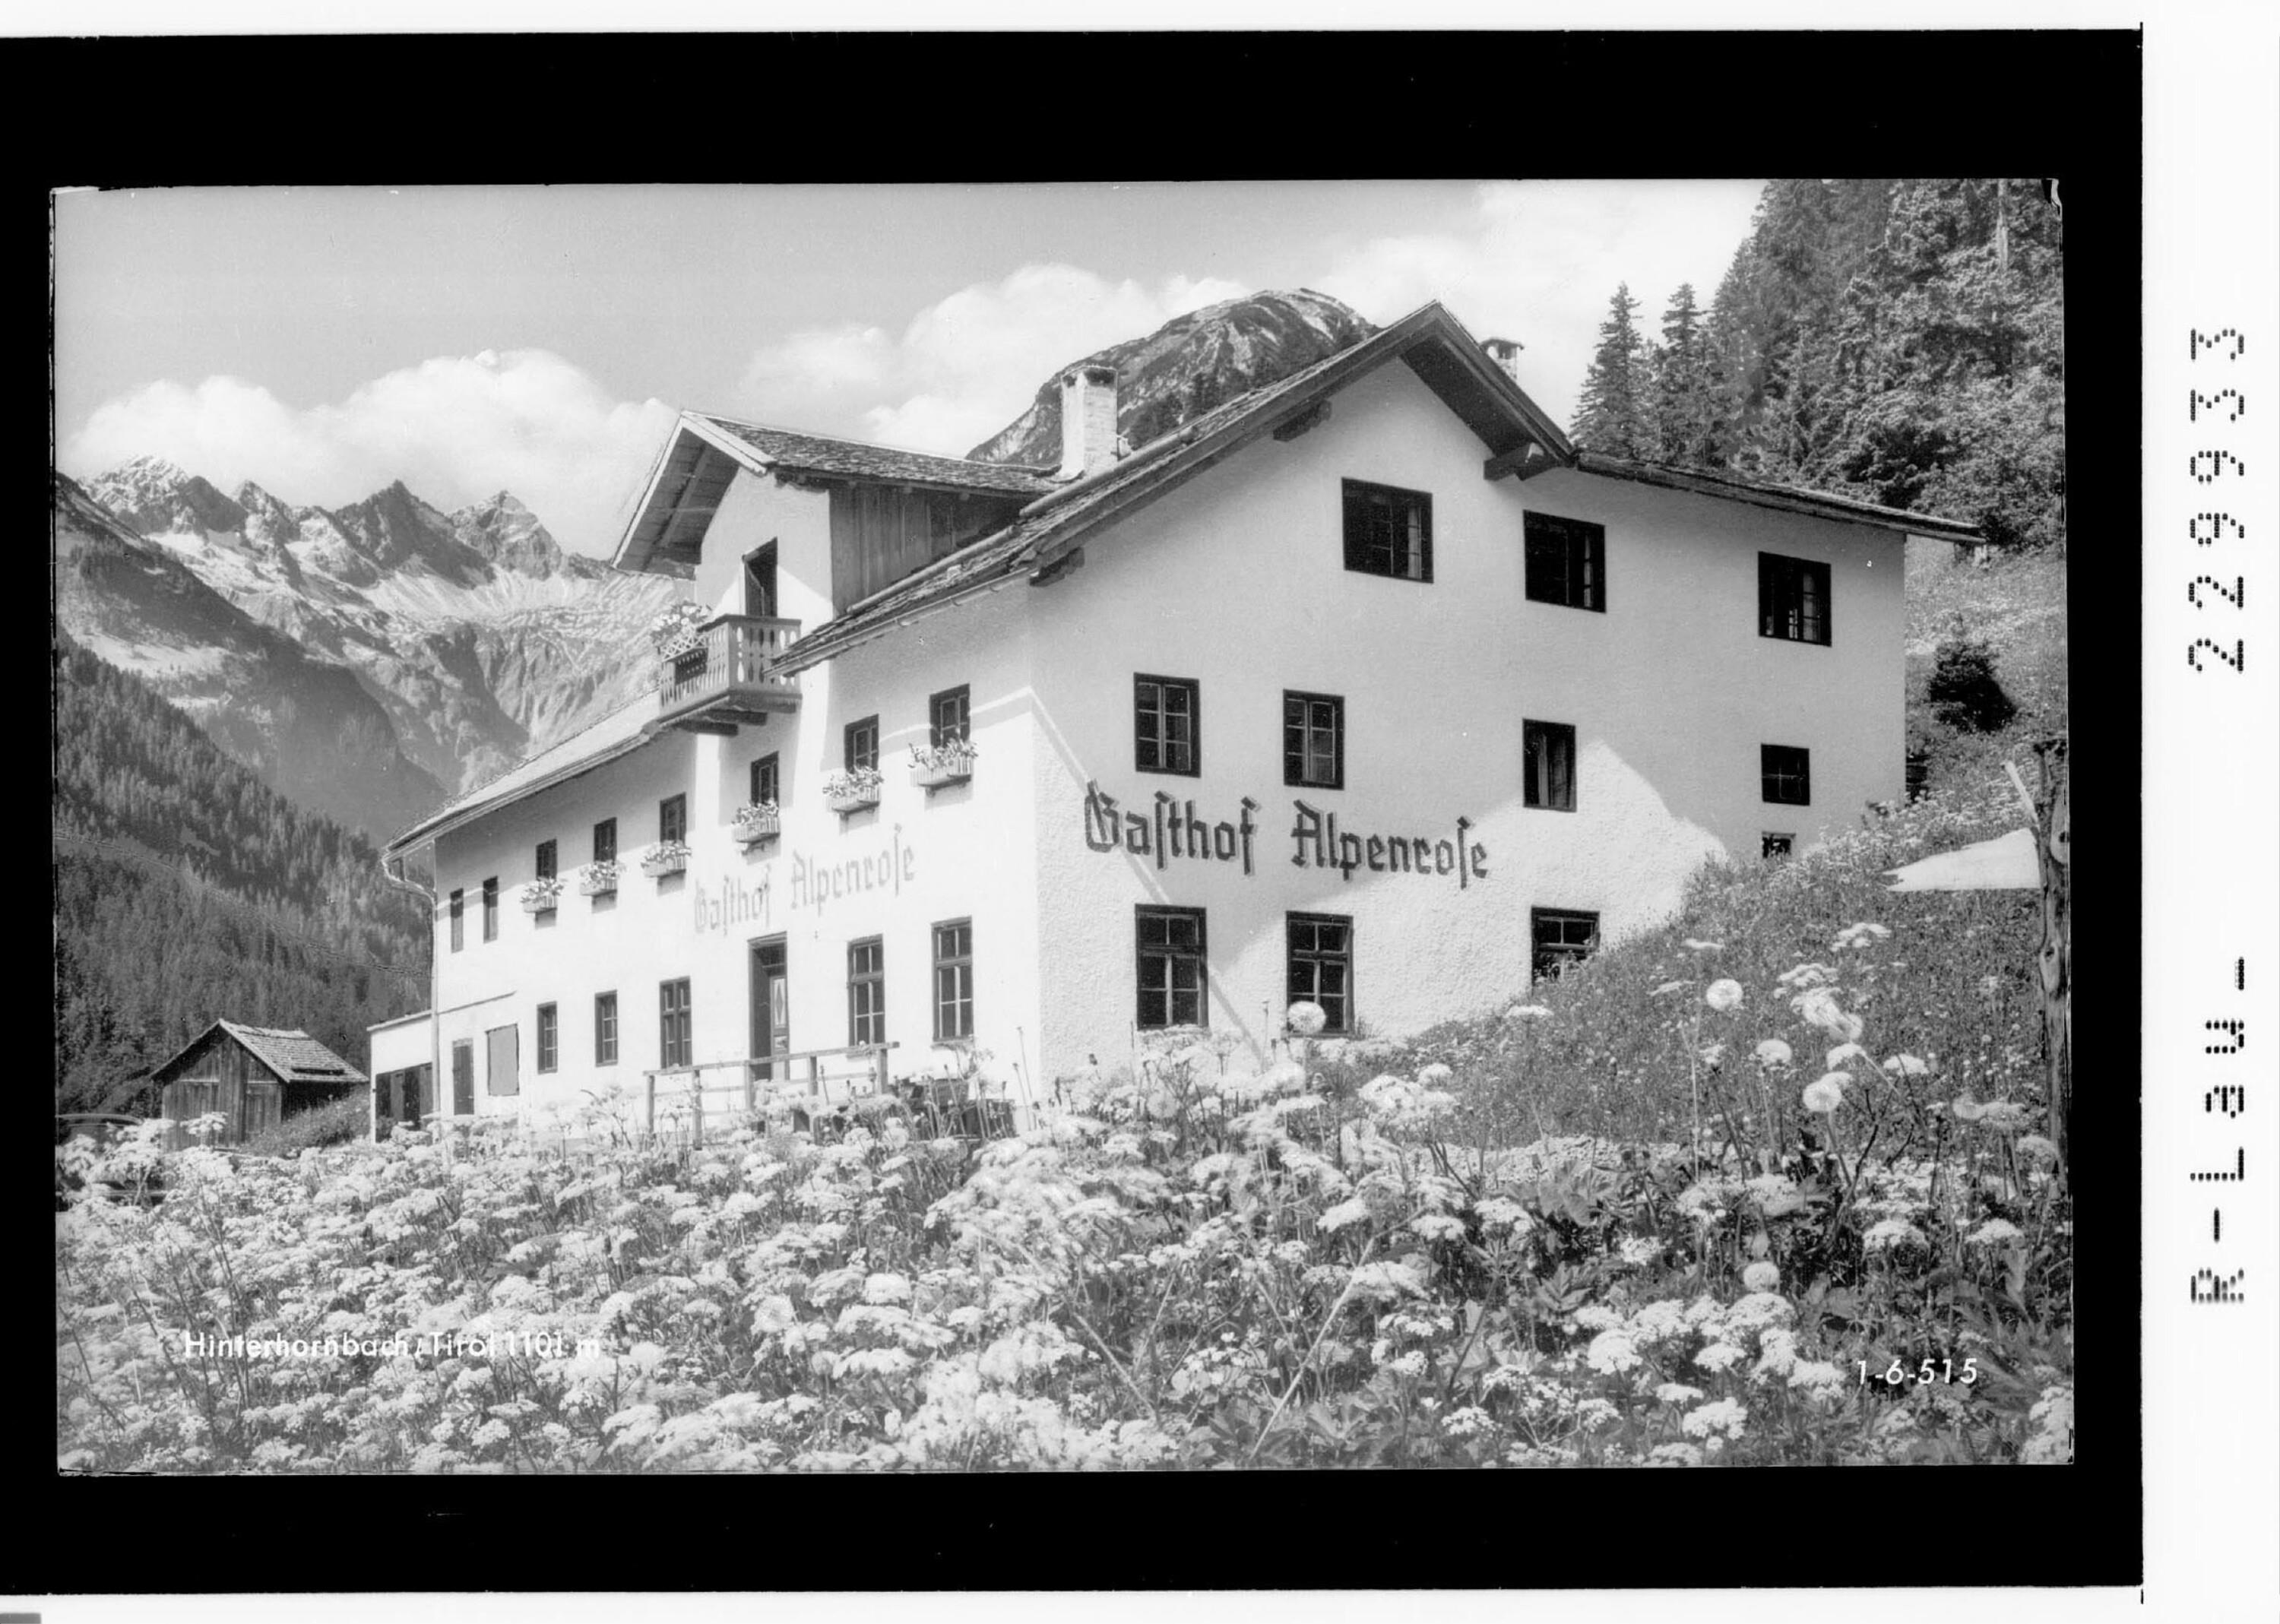 Hinterhornbach / Tirol 1101 m></div>


    <hr>
    <div class=